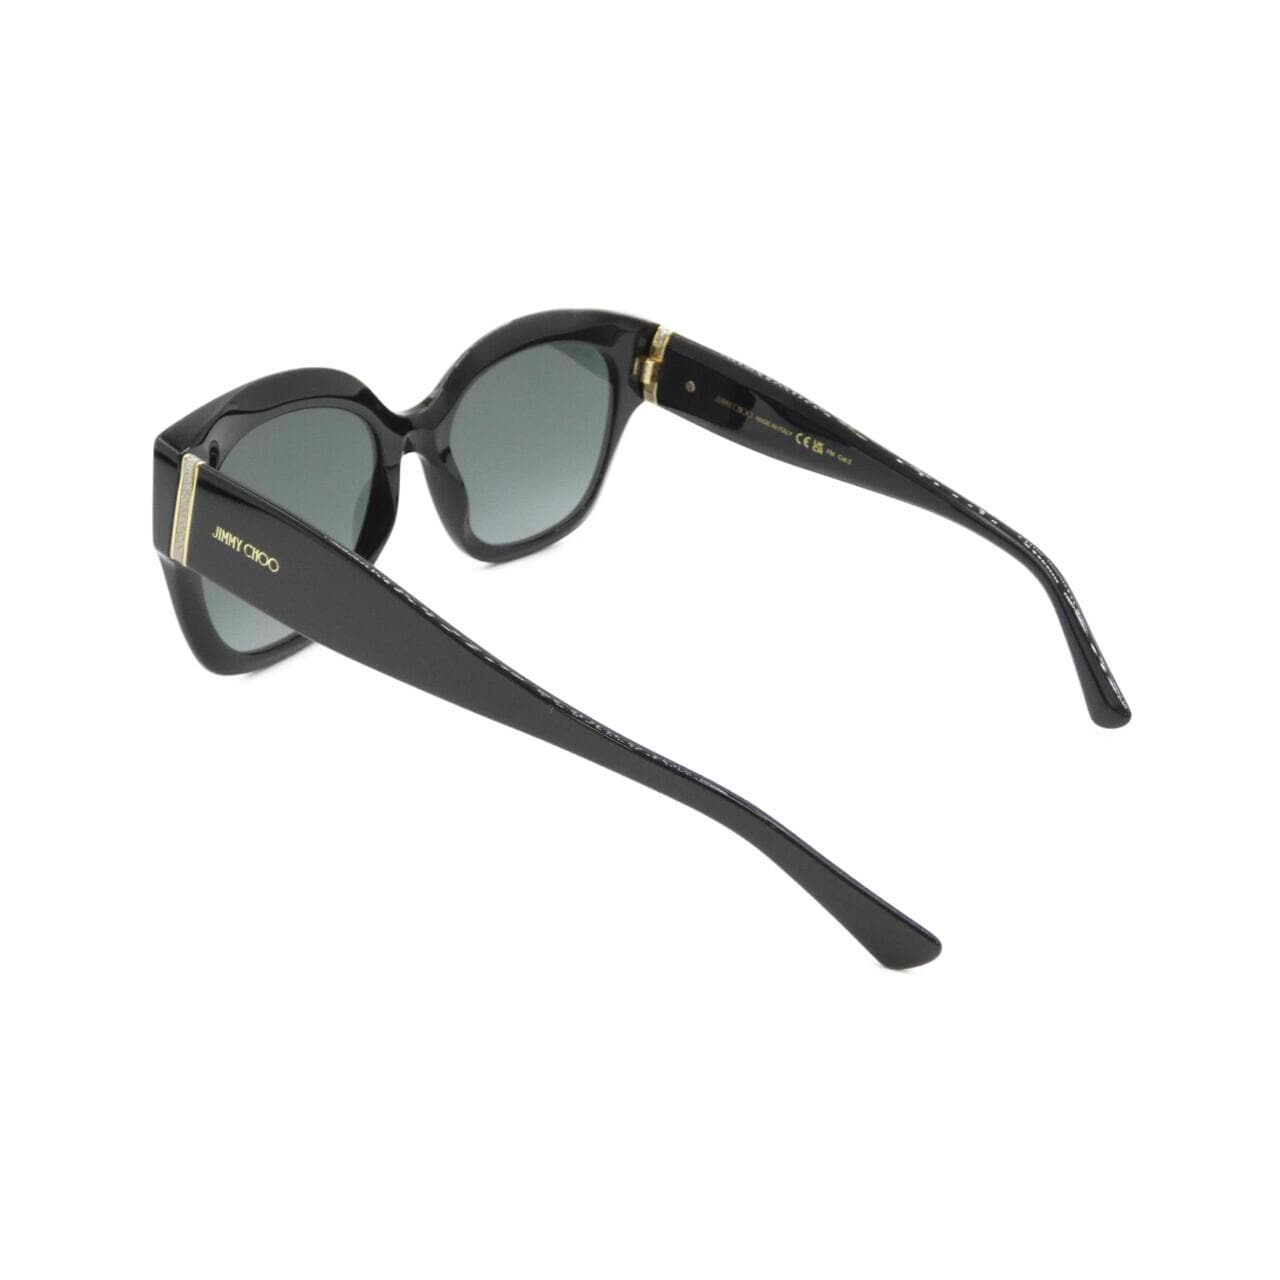 [BRAND NEW] JIMMY CHOO LEELA Sunglasses